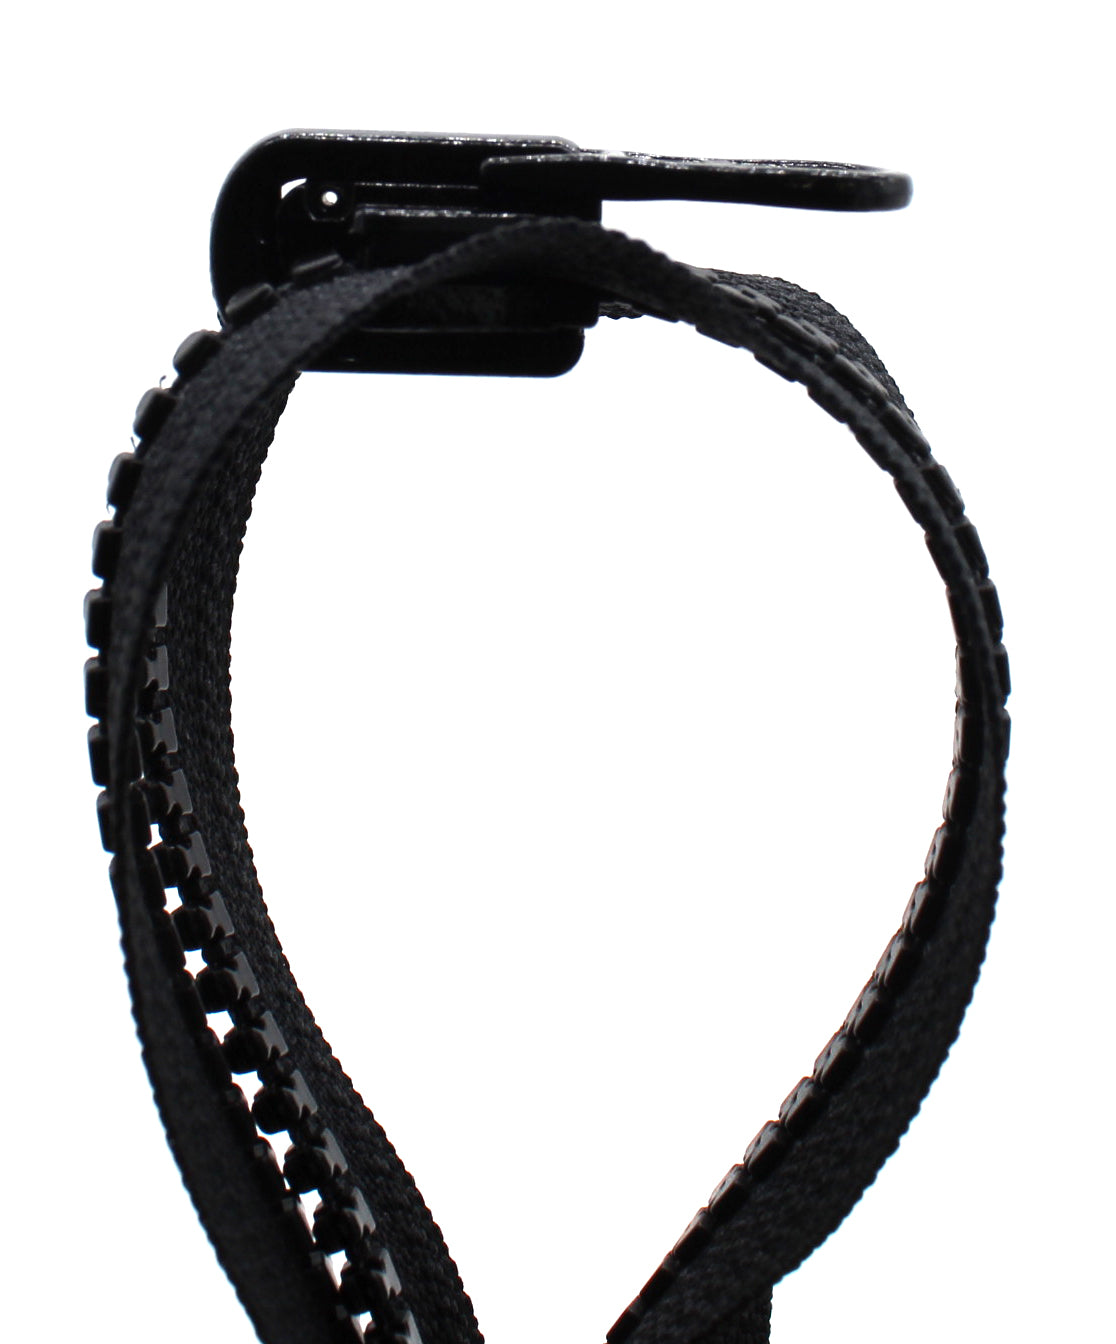 YKK #5 Molded Plastic Long Pull Zipper Sliders - 2/Pack - Natural (801)